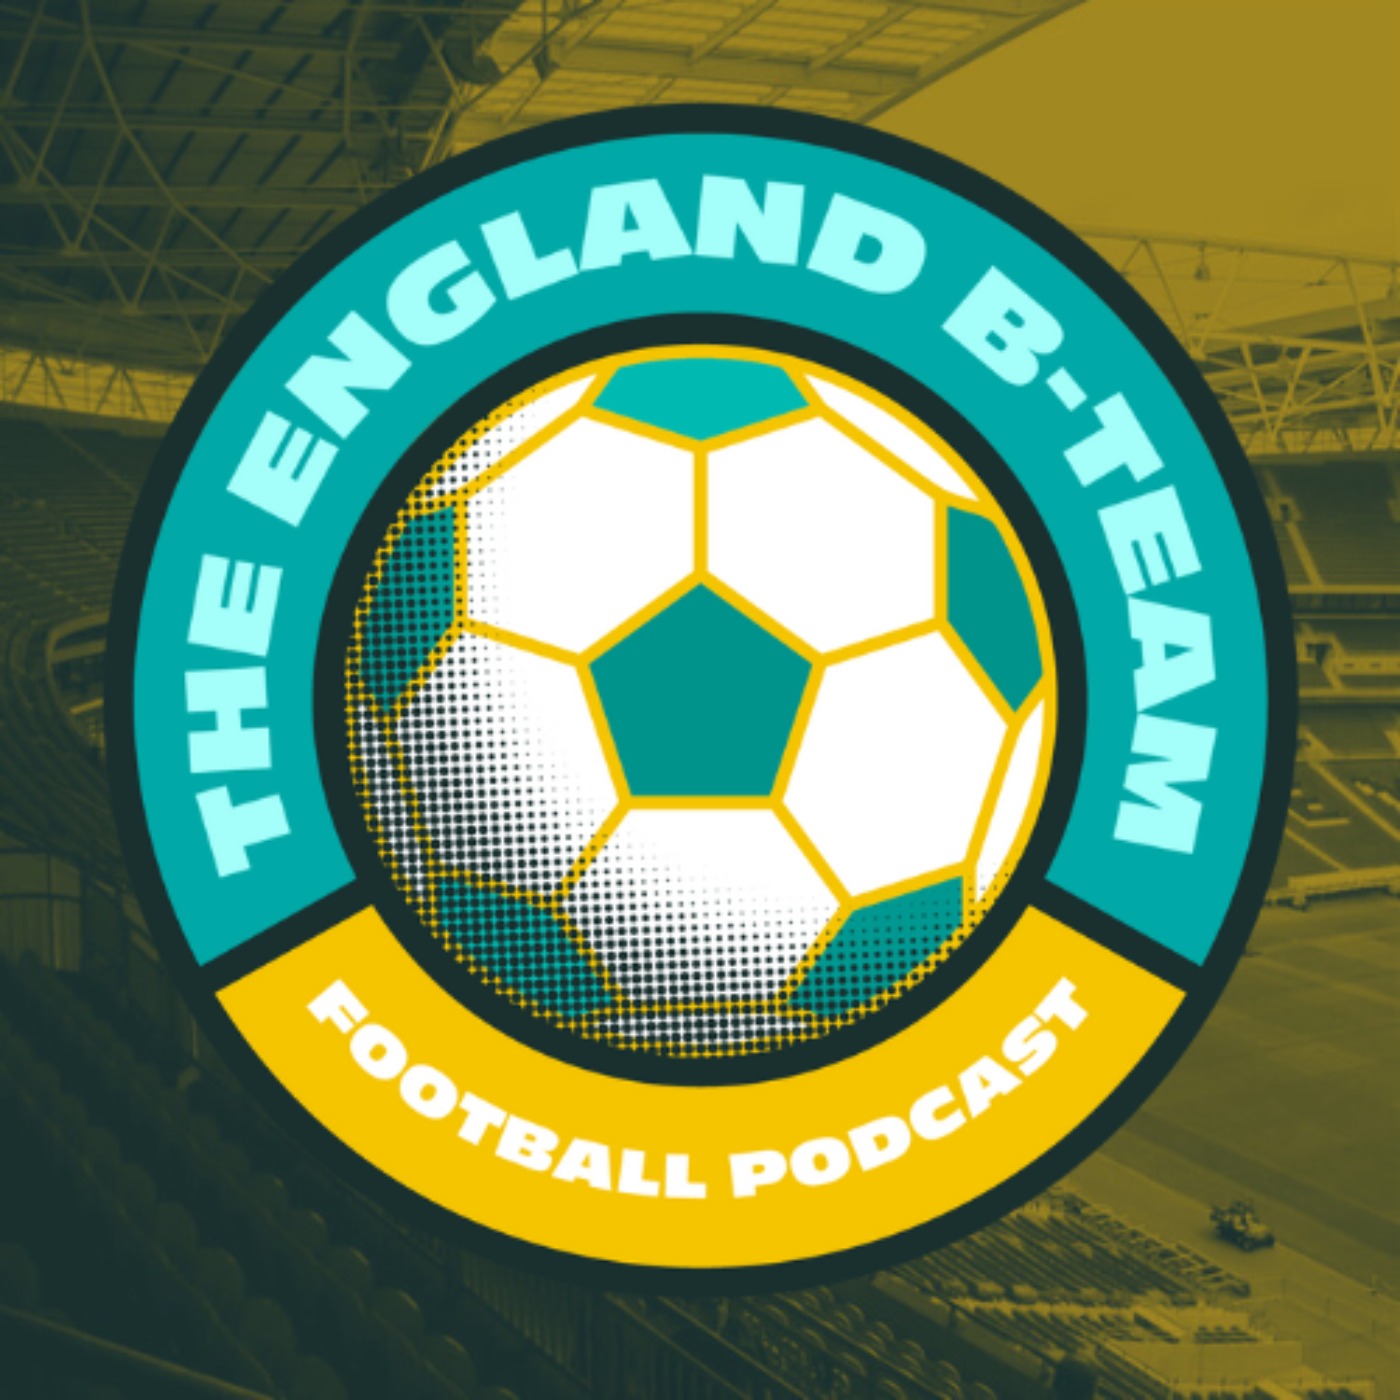 The England B Team Football Podcast